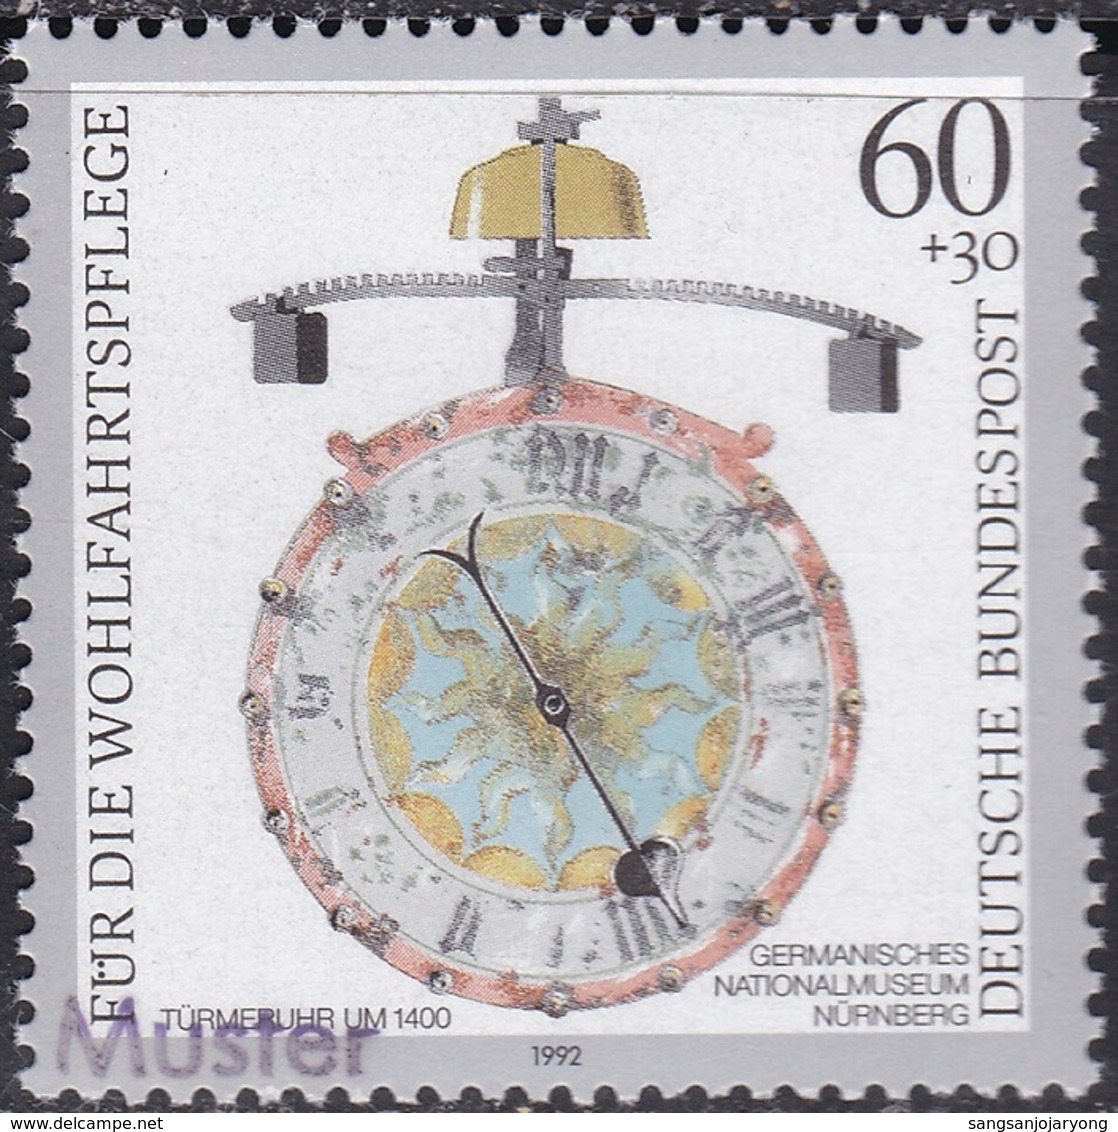 Specimen, Germany ScB734 Antique Clock, Turret (c. 1400), Horloge - Clocks